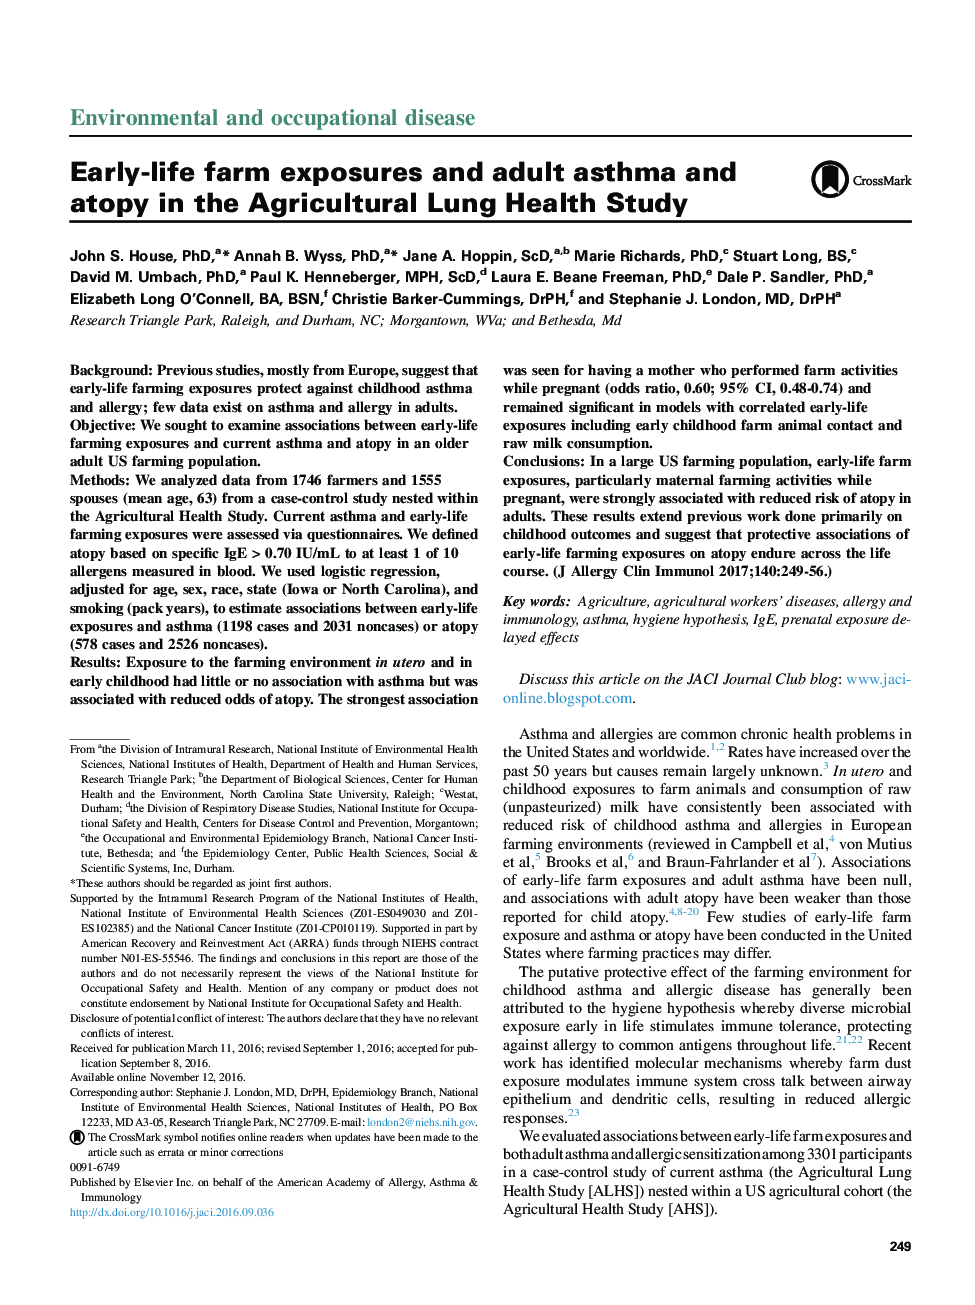 آلودگی مزرعه زودرس و آسم بزرگسالان و آتوپی در مطالعه سلامت ریه کشاورزی 